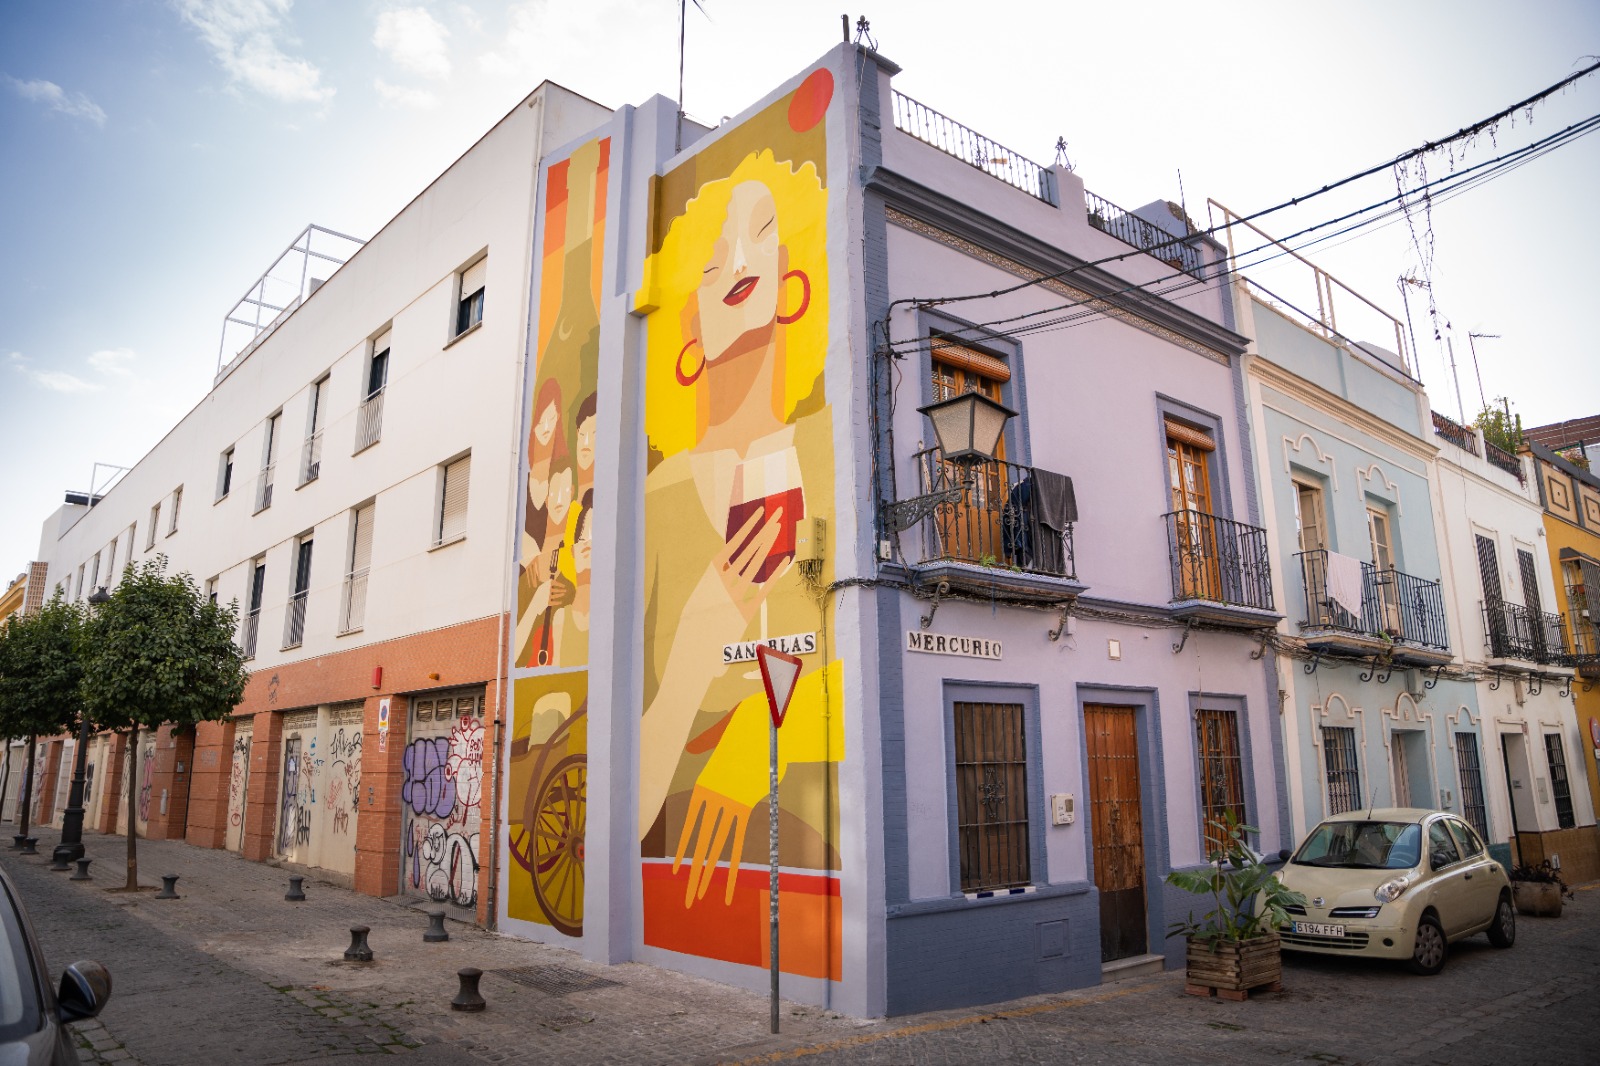 La historia tras el mural de San Blas: homenaje a Onieva - esRadio